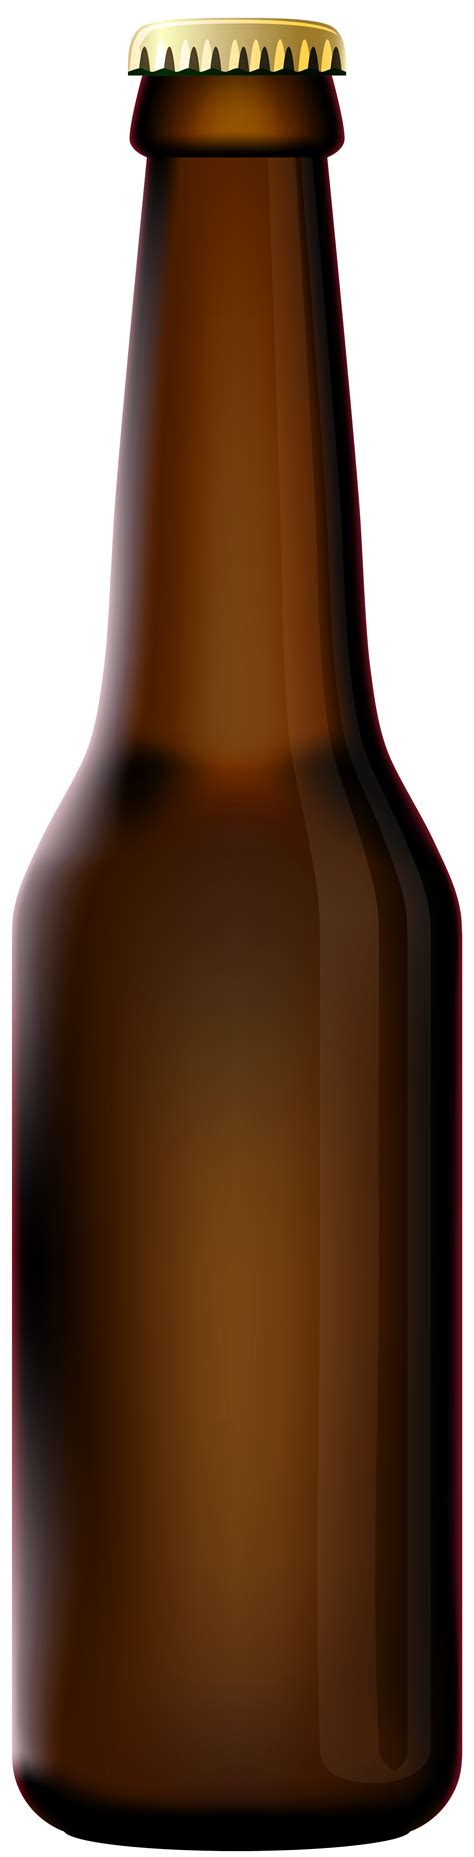 Bottle Beer Png Free Logo Image